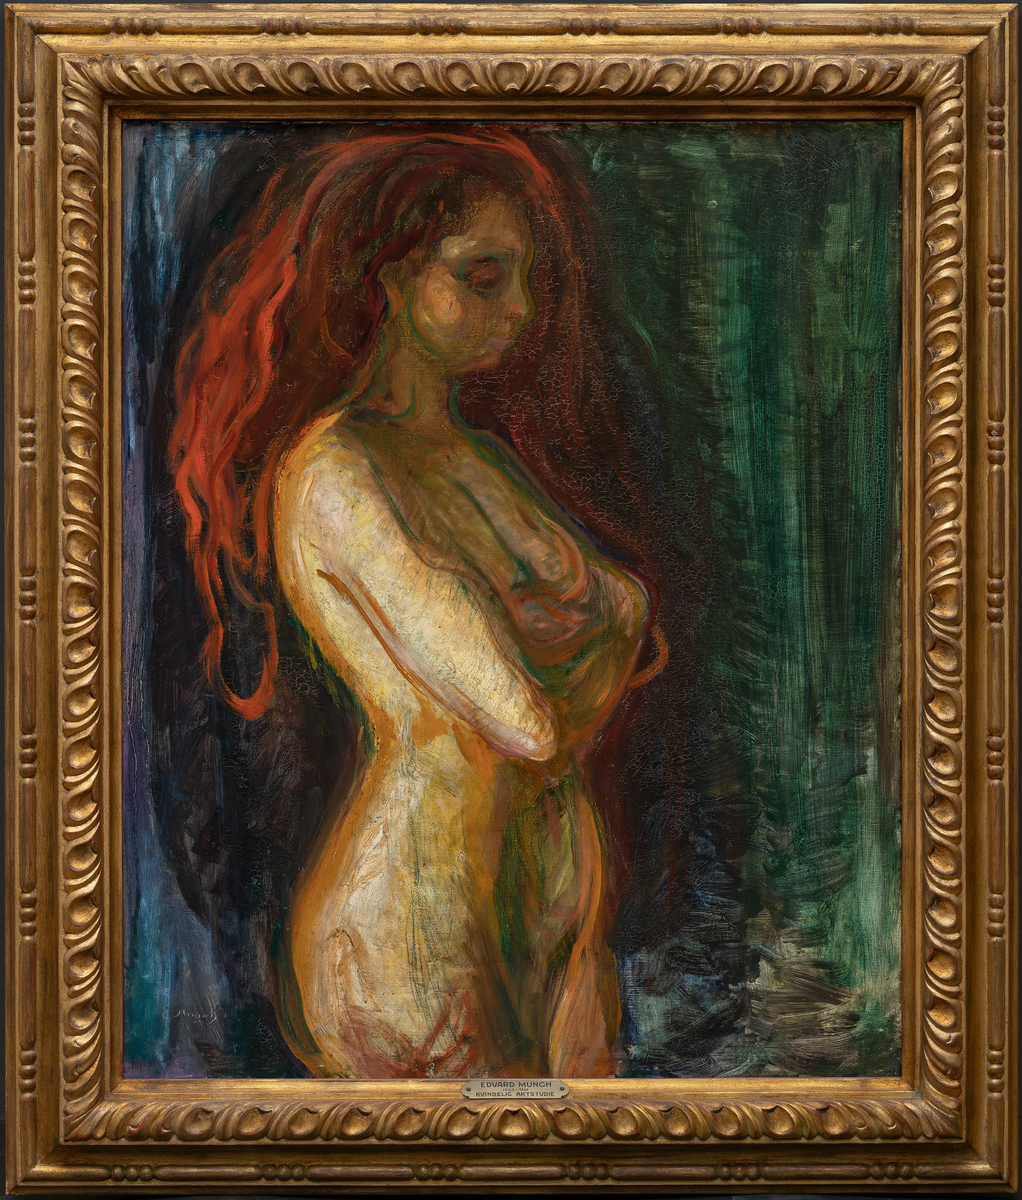 Stående naken kvinne i helfigur i profil til høyre med utslått rødgyllent hår. Armene korslagt under brystet. Grønn og blå bakgrunn.